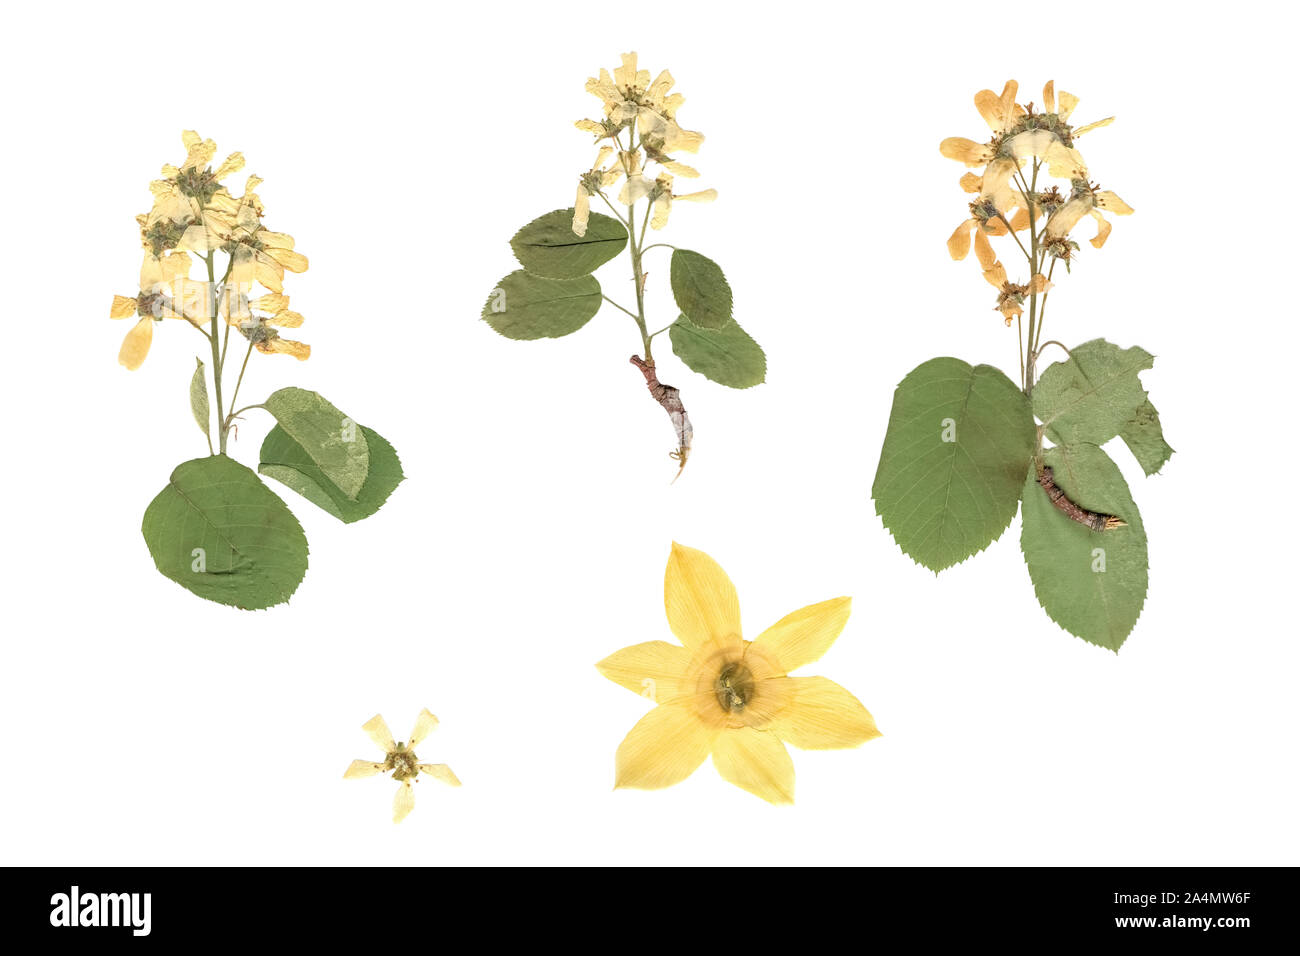 Herbier. Composition de plantes séchées et pressées avec des fleurs blanches et jaunes sur fond blanc. Banque D'Images